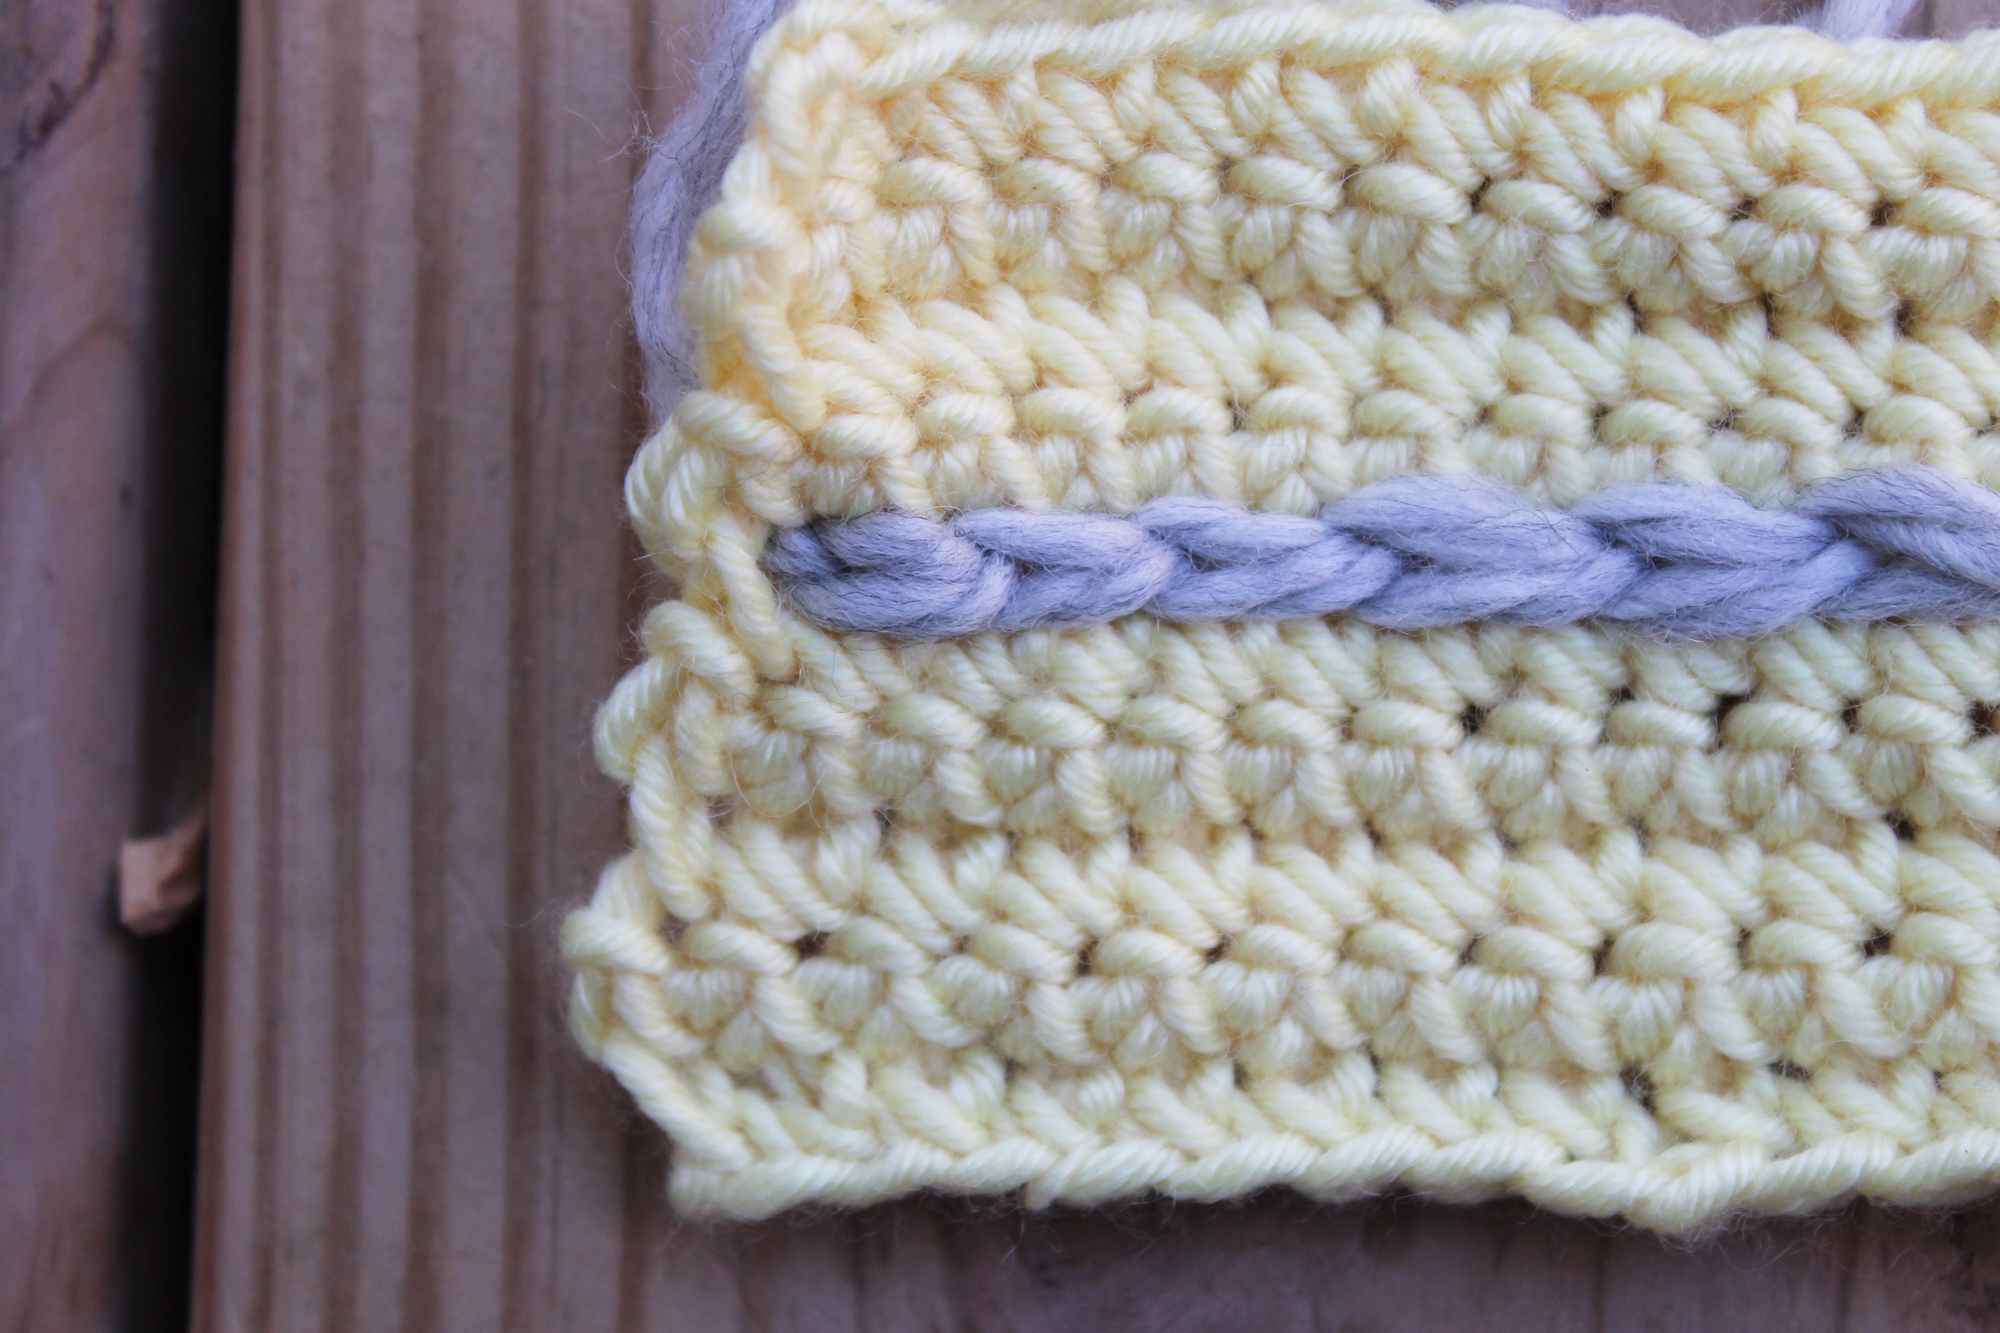 Surface crochet fastening off